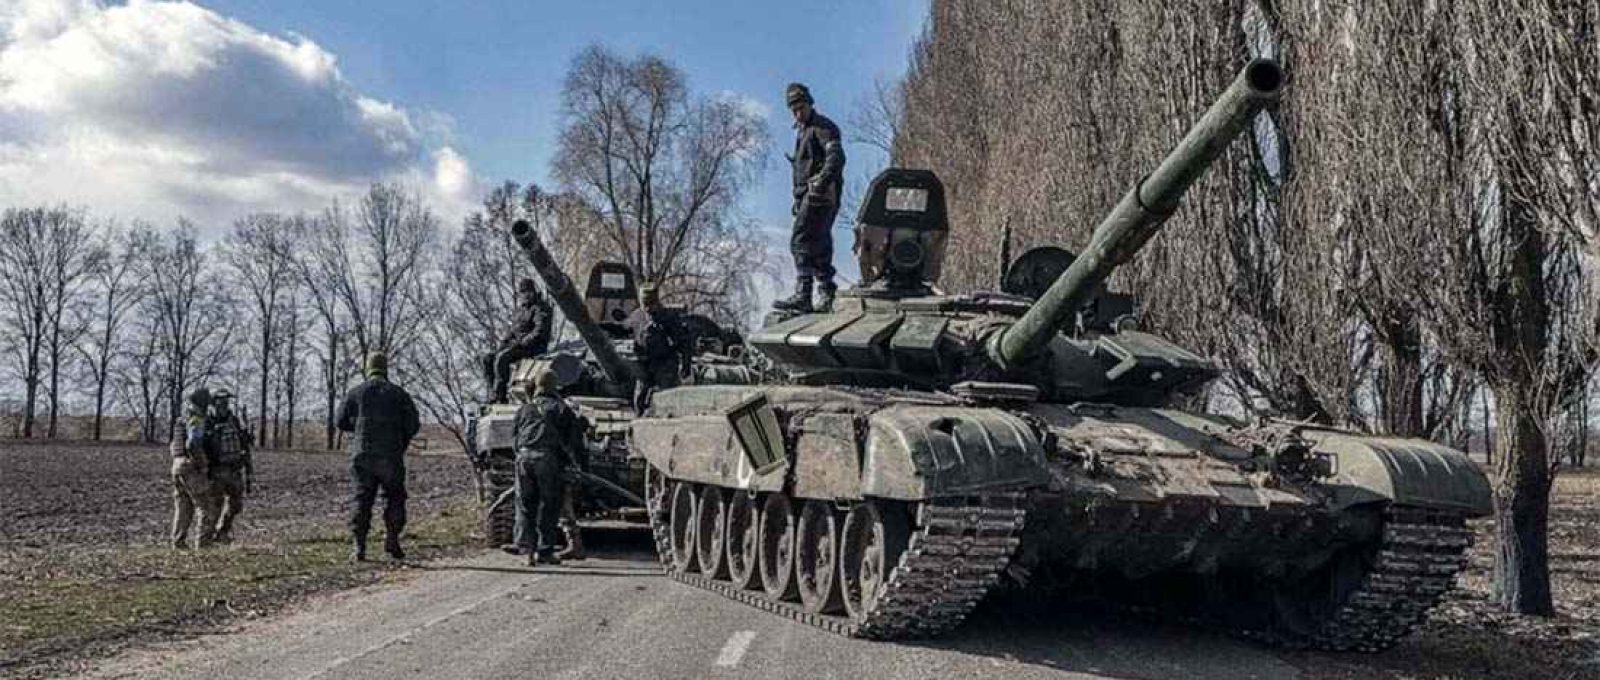 Militares ucranianos inspecionam carros de combate russos capturados na vila de Lukyanivka, nos arredores de Kiev, na Ucrânia, em 27 de março de 2022 (Marko Djurica/Reuters).